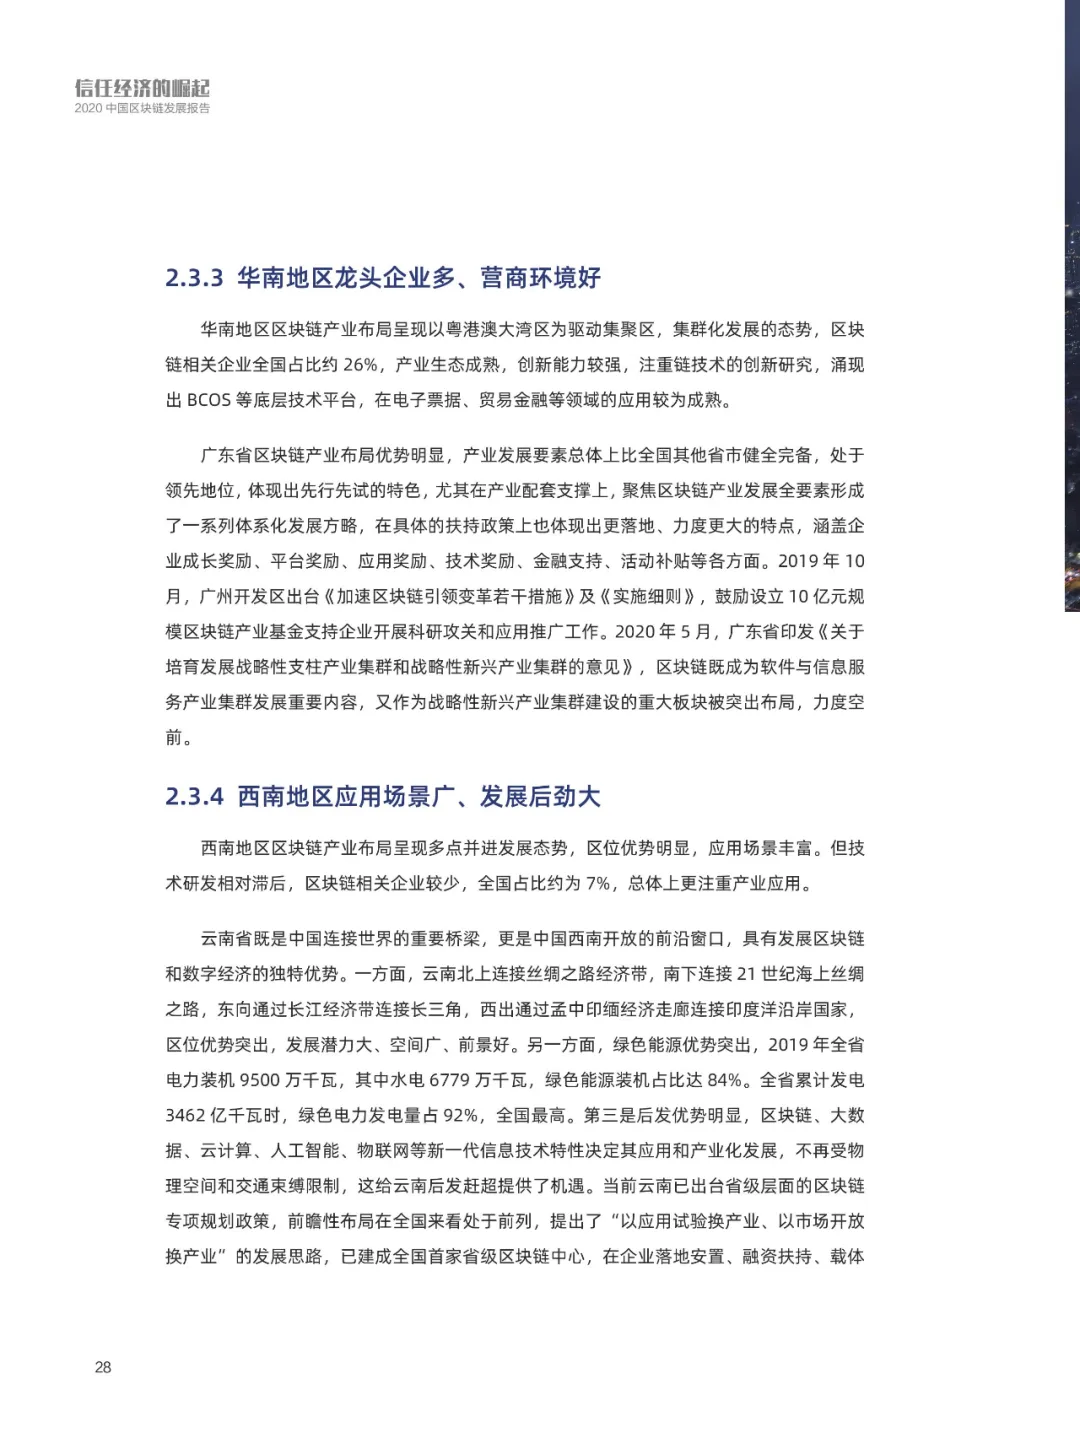 信任经济的崛起——2020中国区块链发展报告_加密算法_29